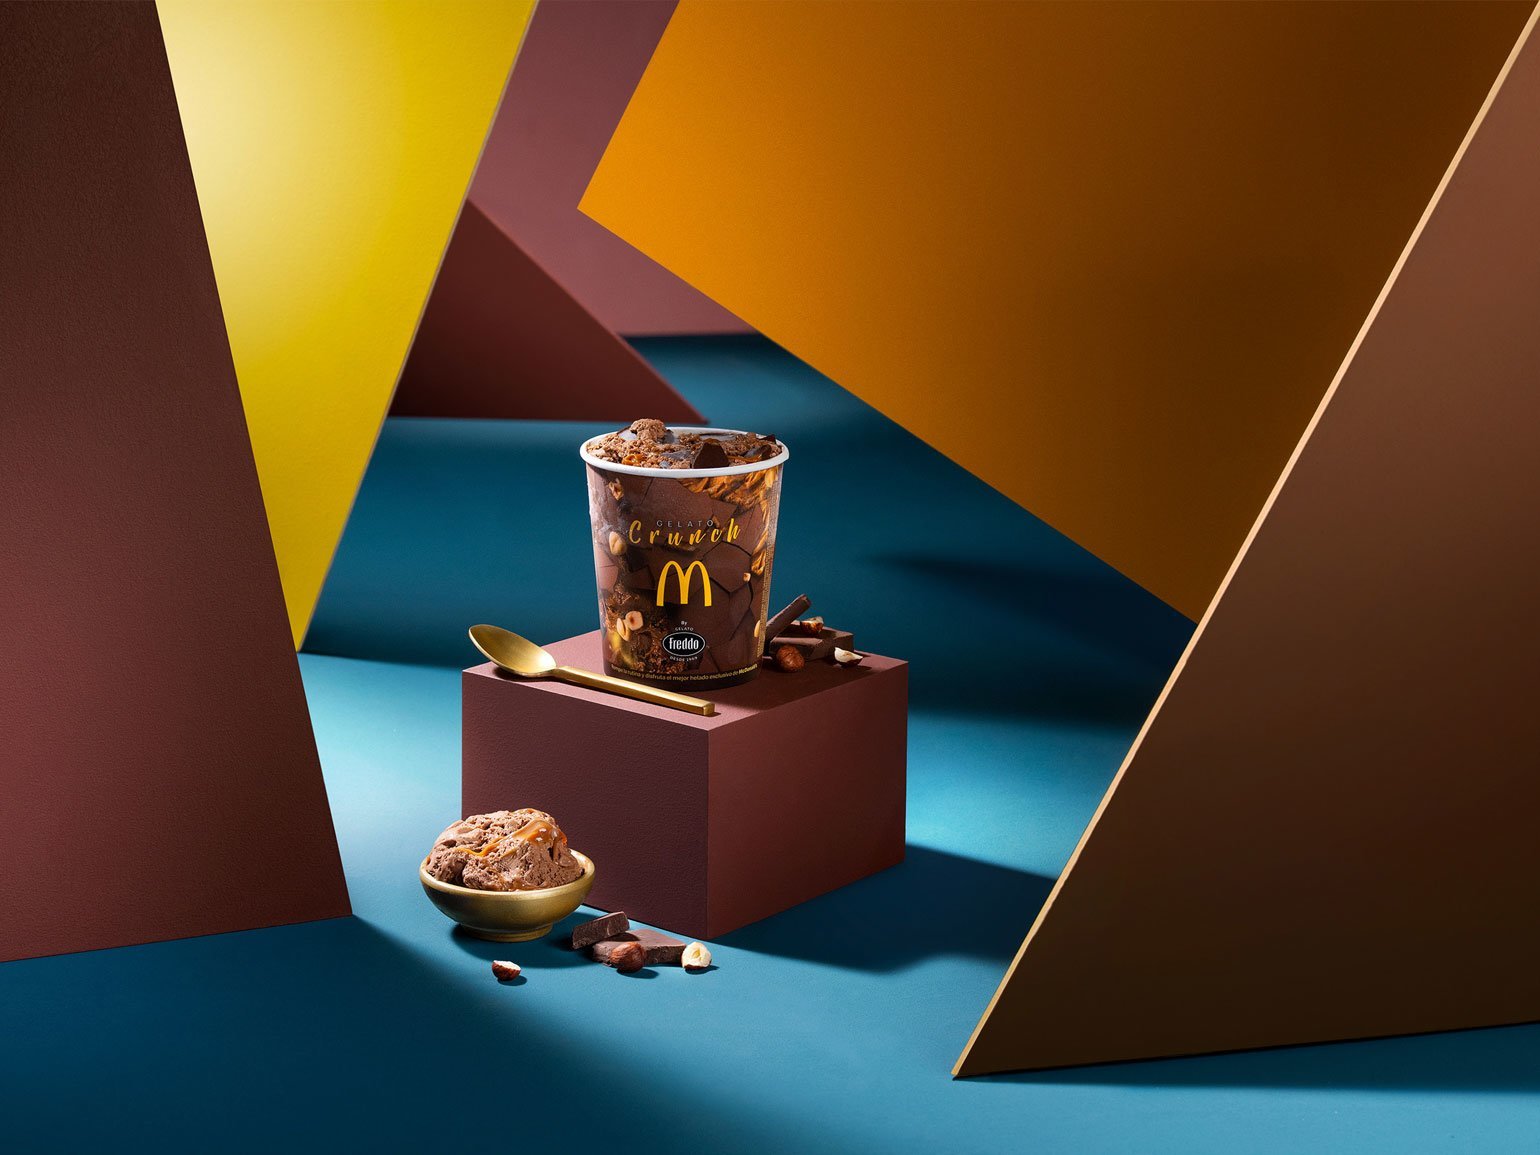 фотография шоколадного мороженого с кусочками шоколада McDonald’s Crunch 